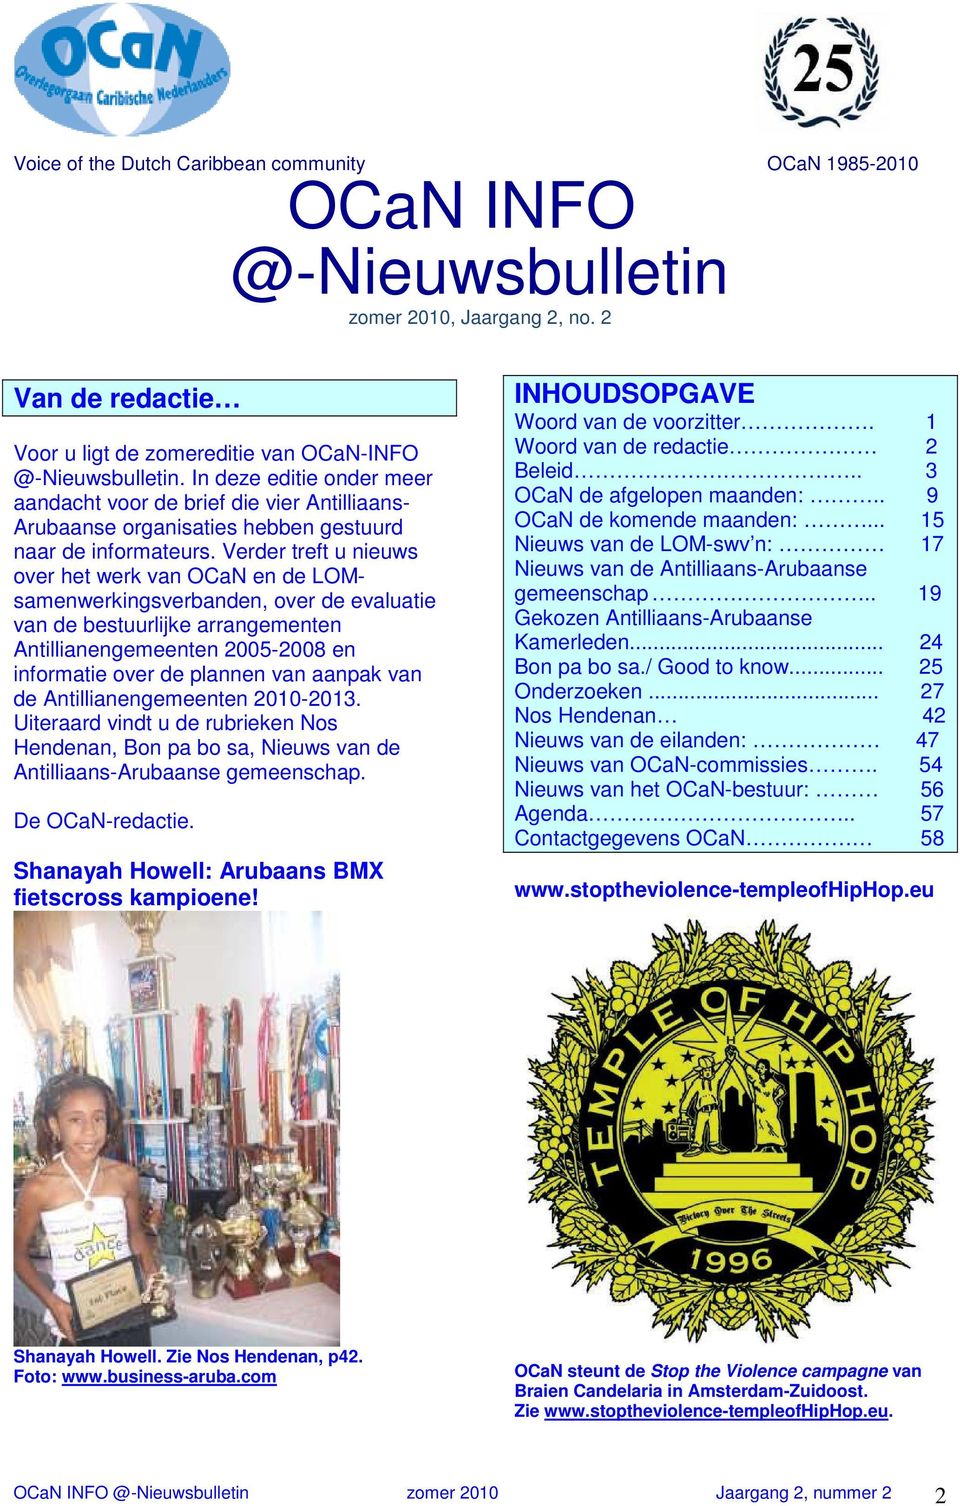 aanpak van de Antillianengemeenten 2010-2013. Uiteraard vindt u de rubrieken Nos Hendenan, Bon pa bo sa, Nieuws van de Antilliaans-Arubaanse gemeenschap. De OCaN-redactie.